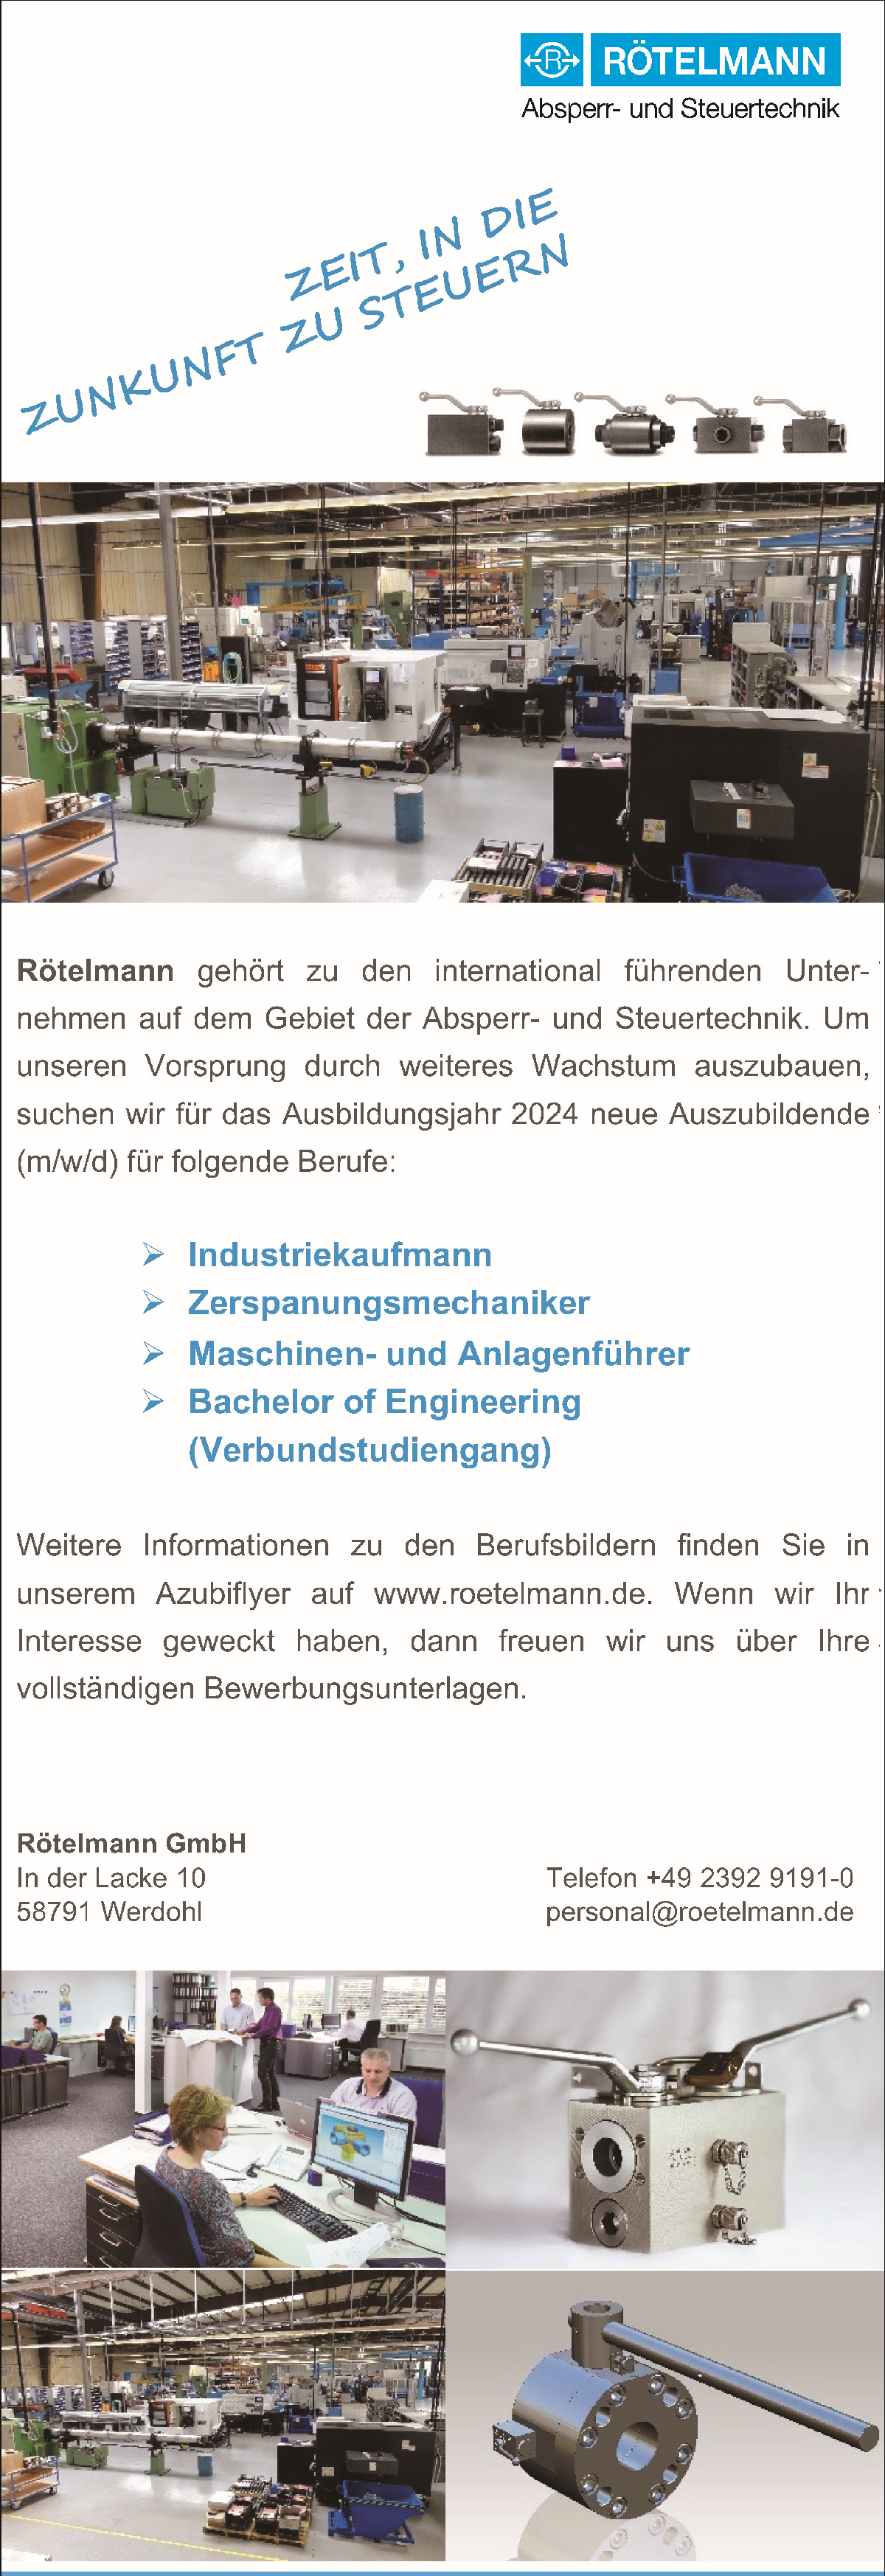 Rötelmann GmbH